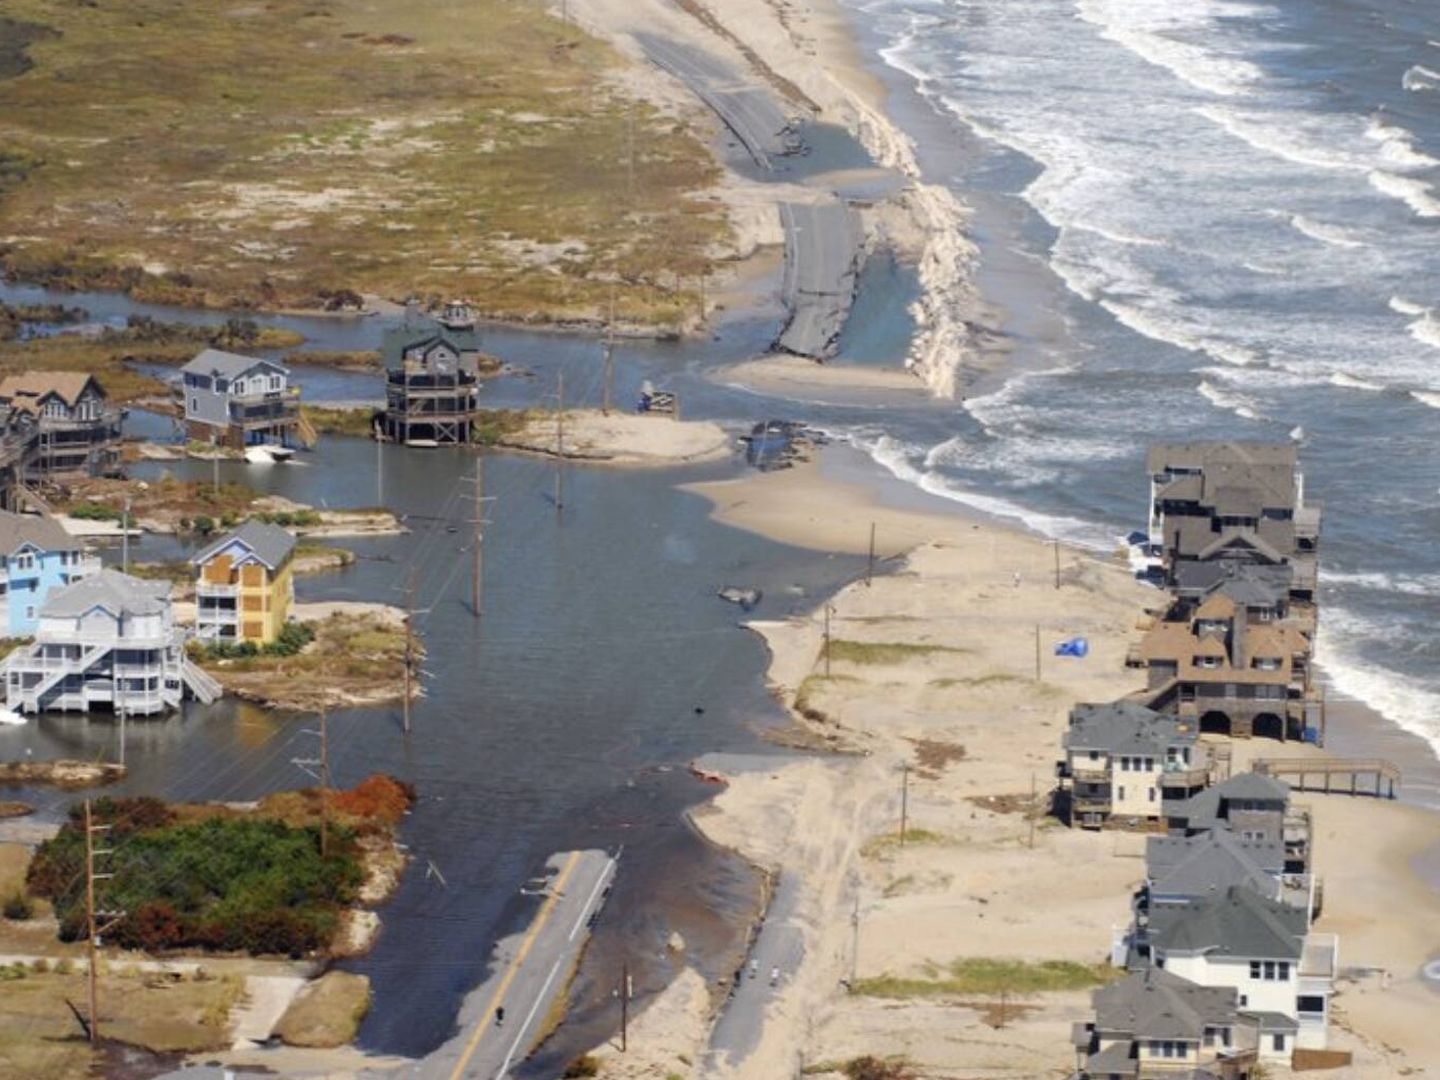 Los devastadores efectos del último huracán que azotó Rodanthe (X/@Pedro_Torrijos)